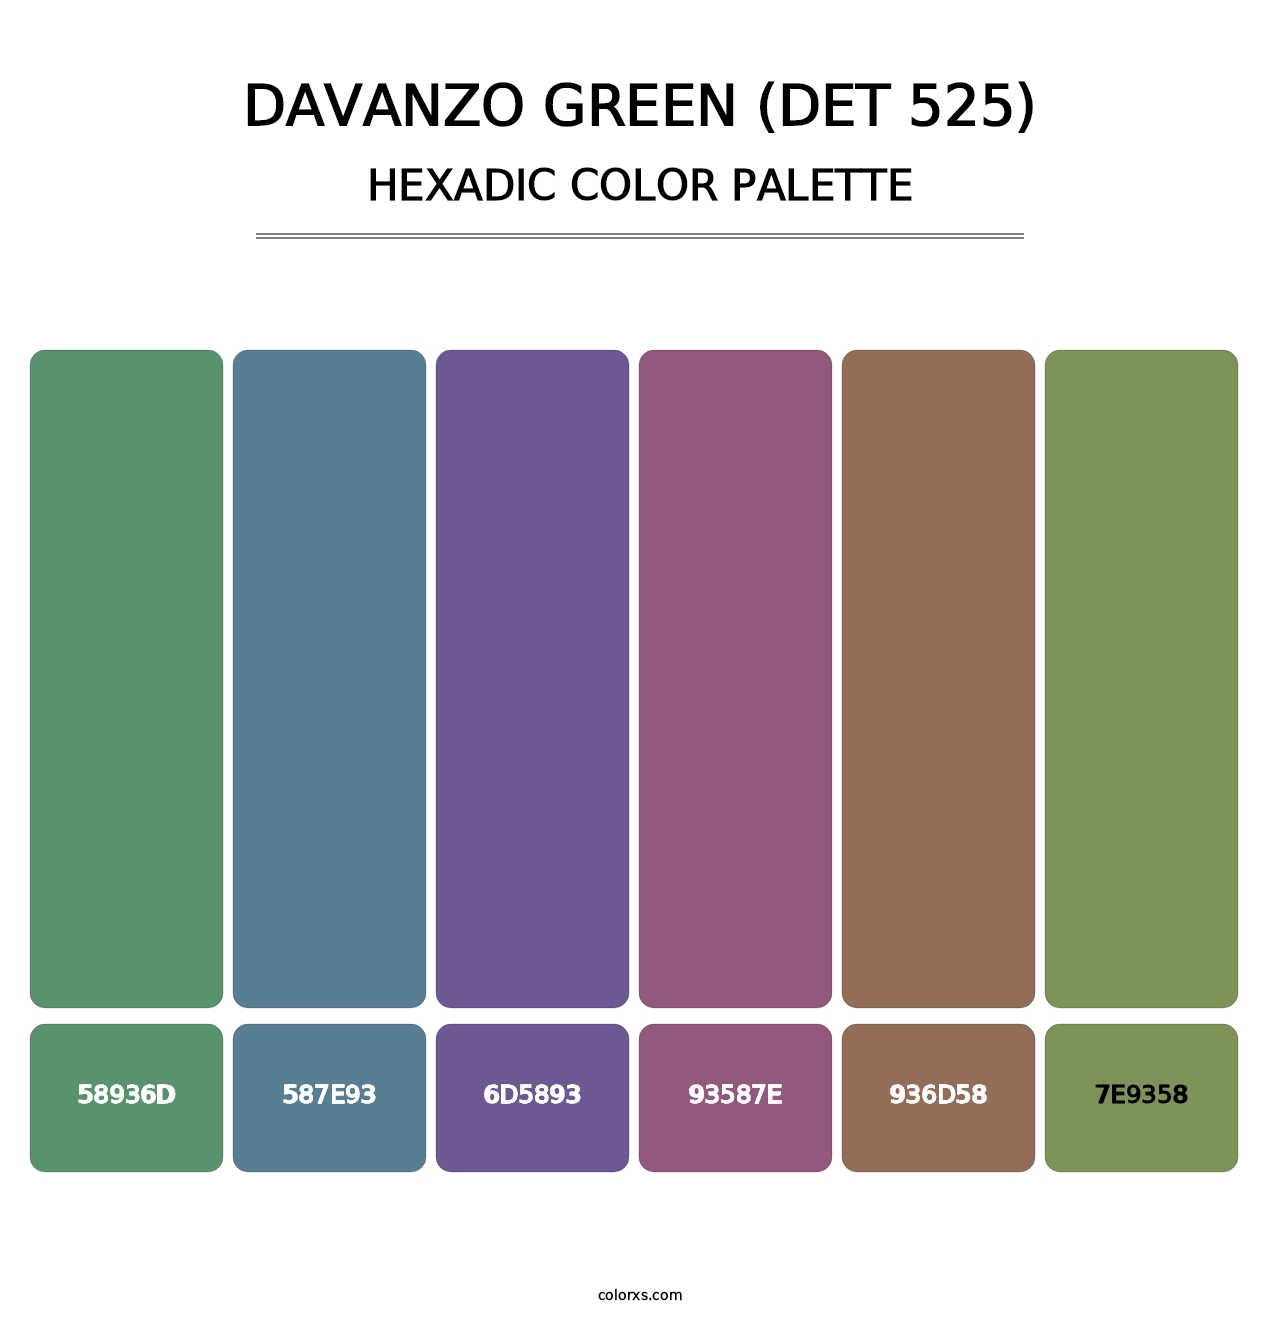 DaVanzo Green (DET 525) - Hexadic Color Palette